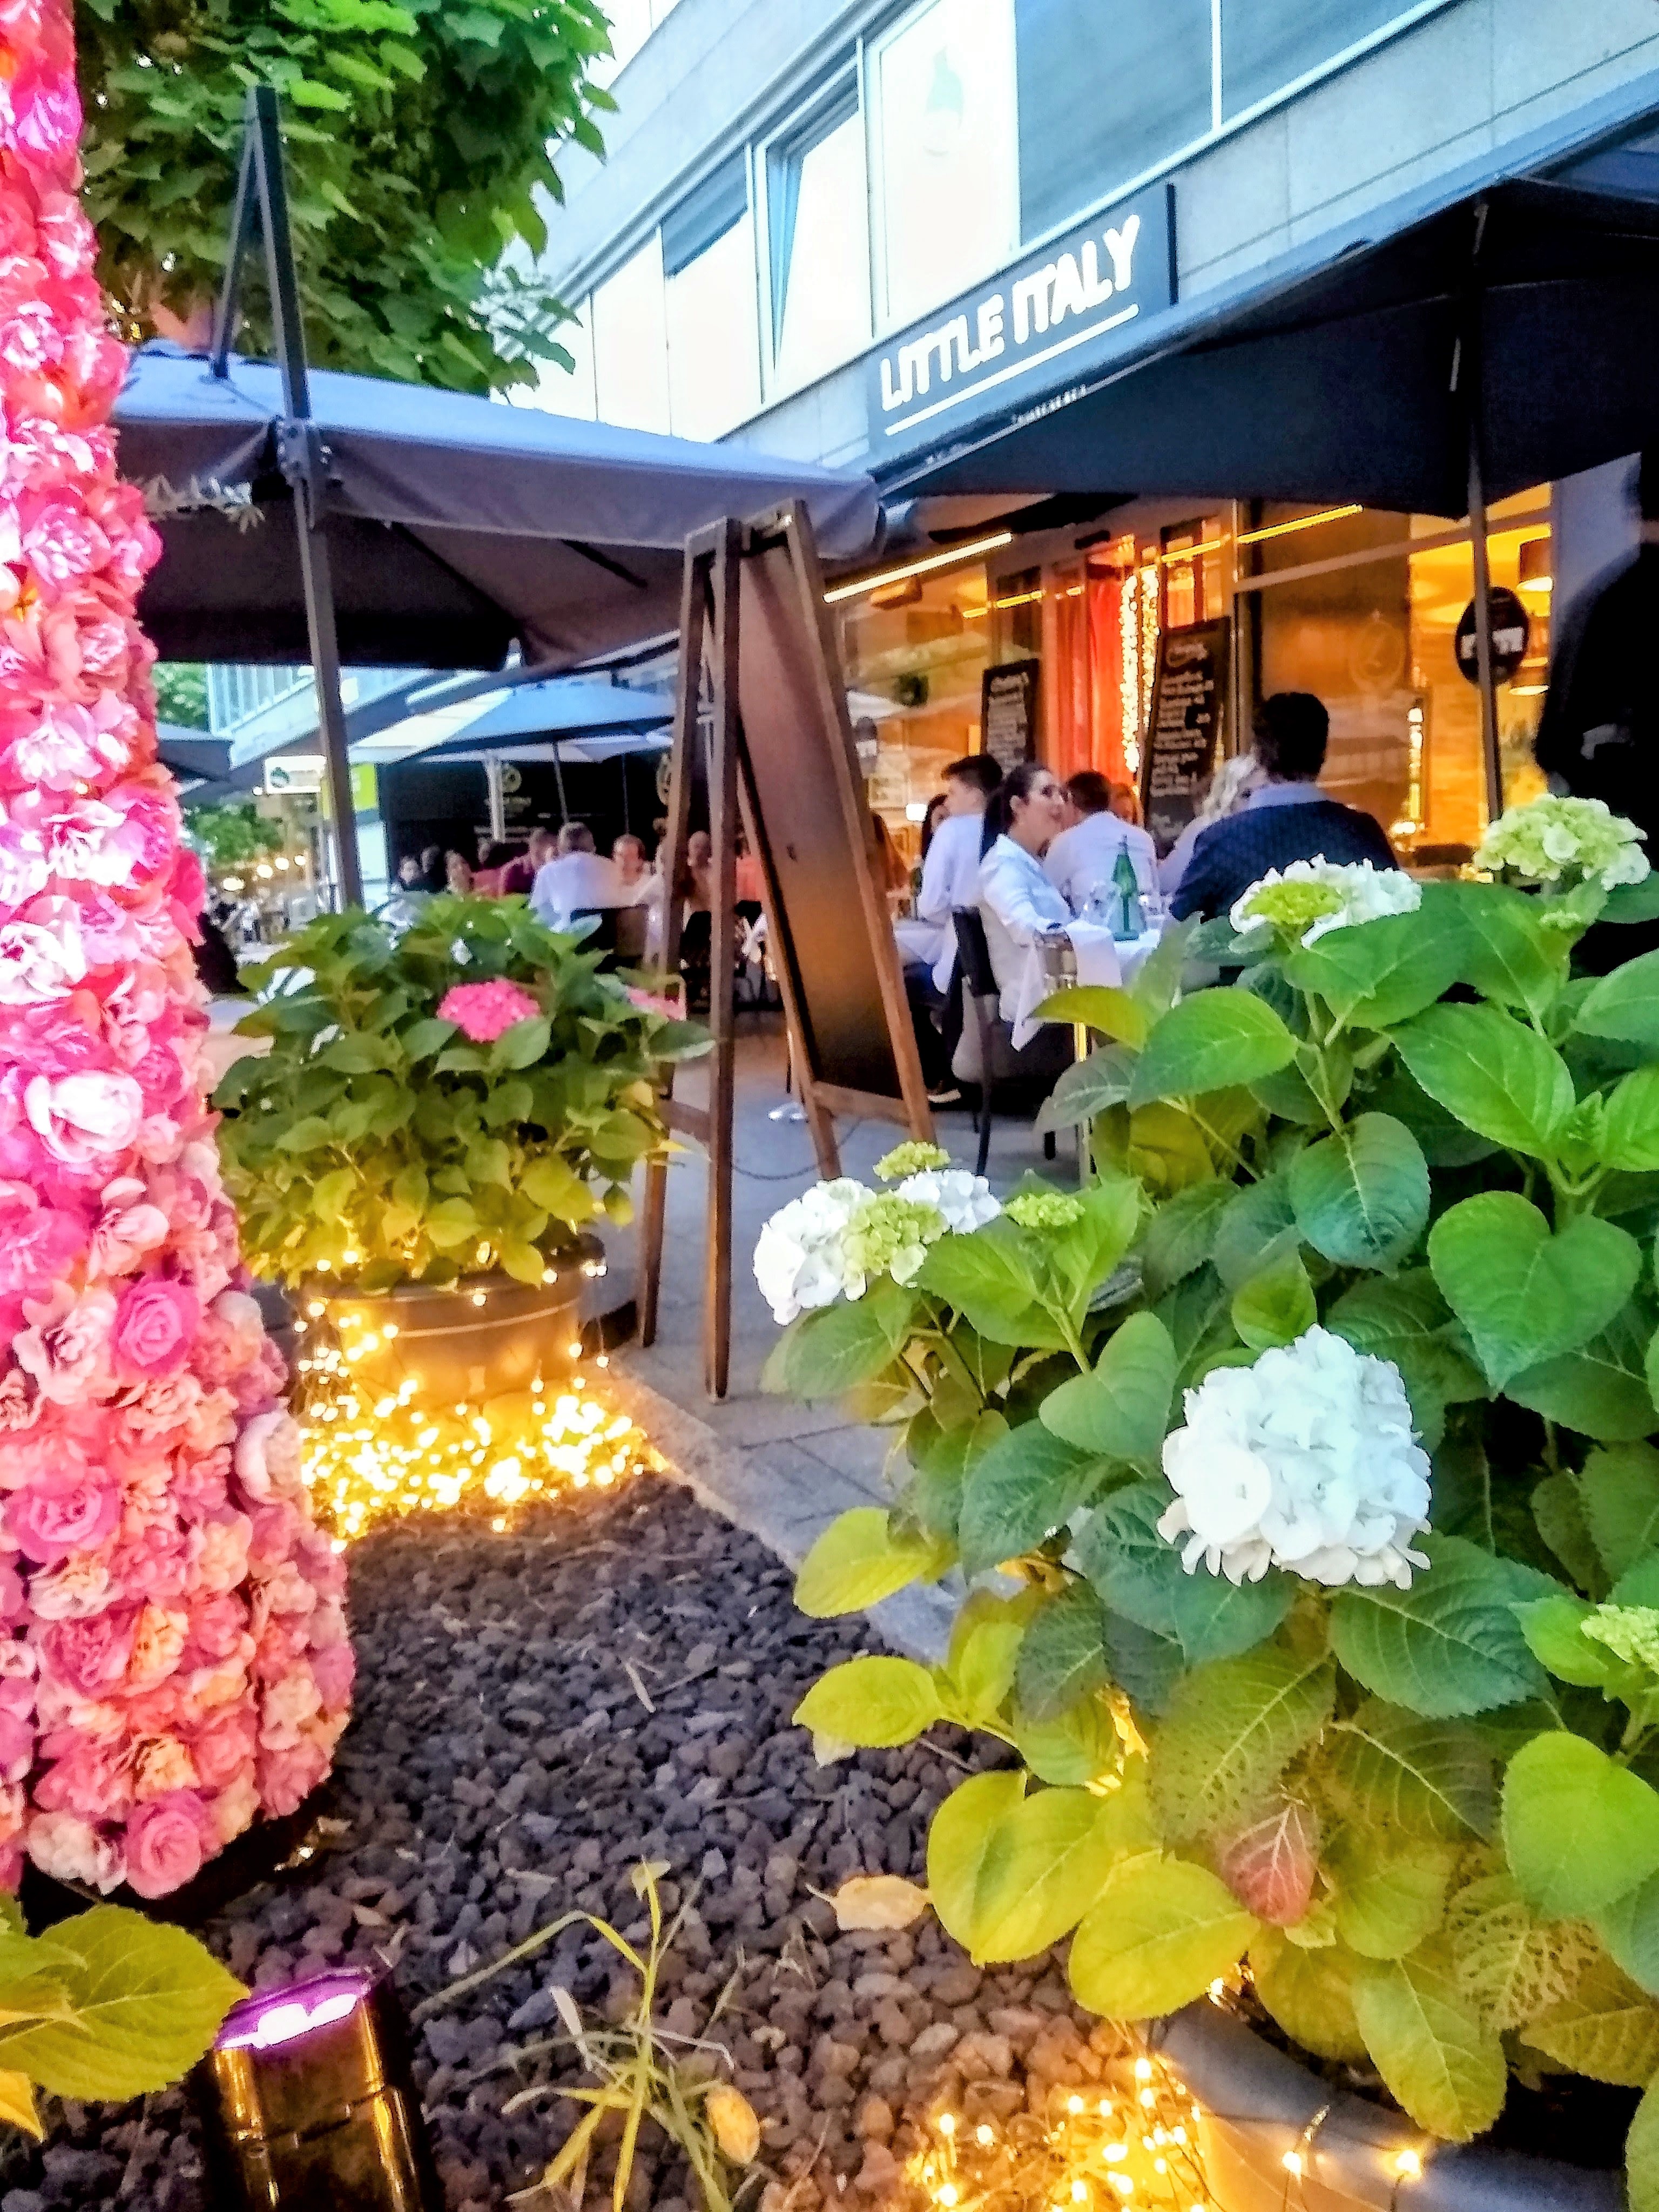 Little Italy Restaurant, Wiesbaden outdoor seating